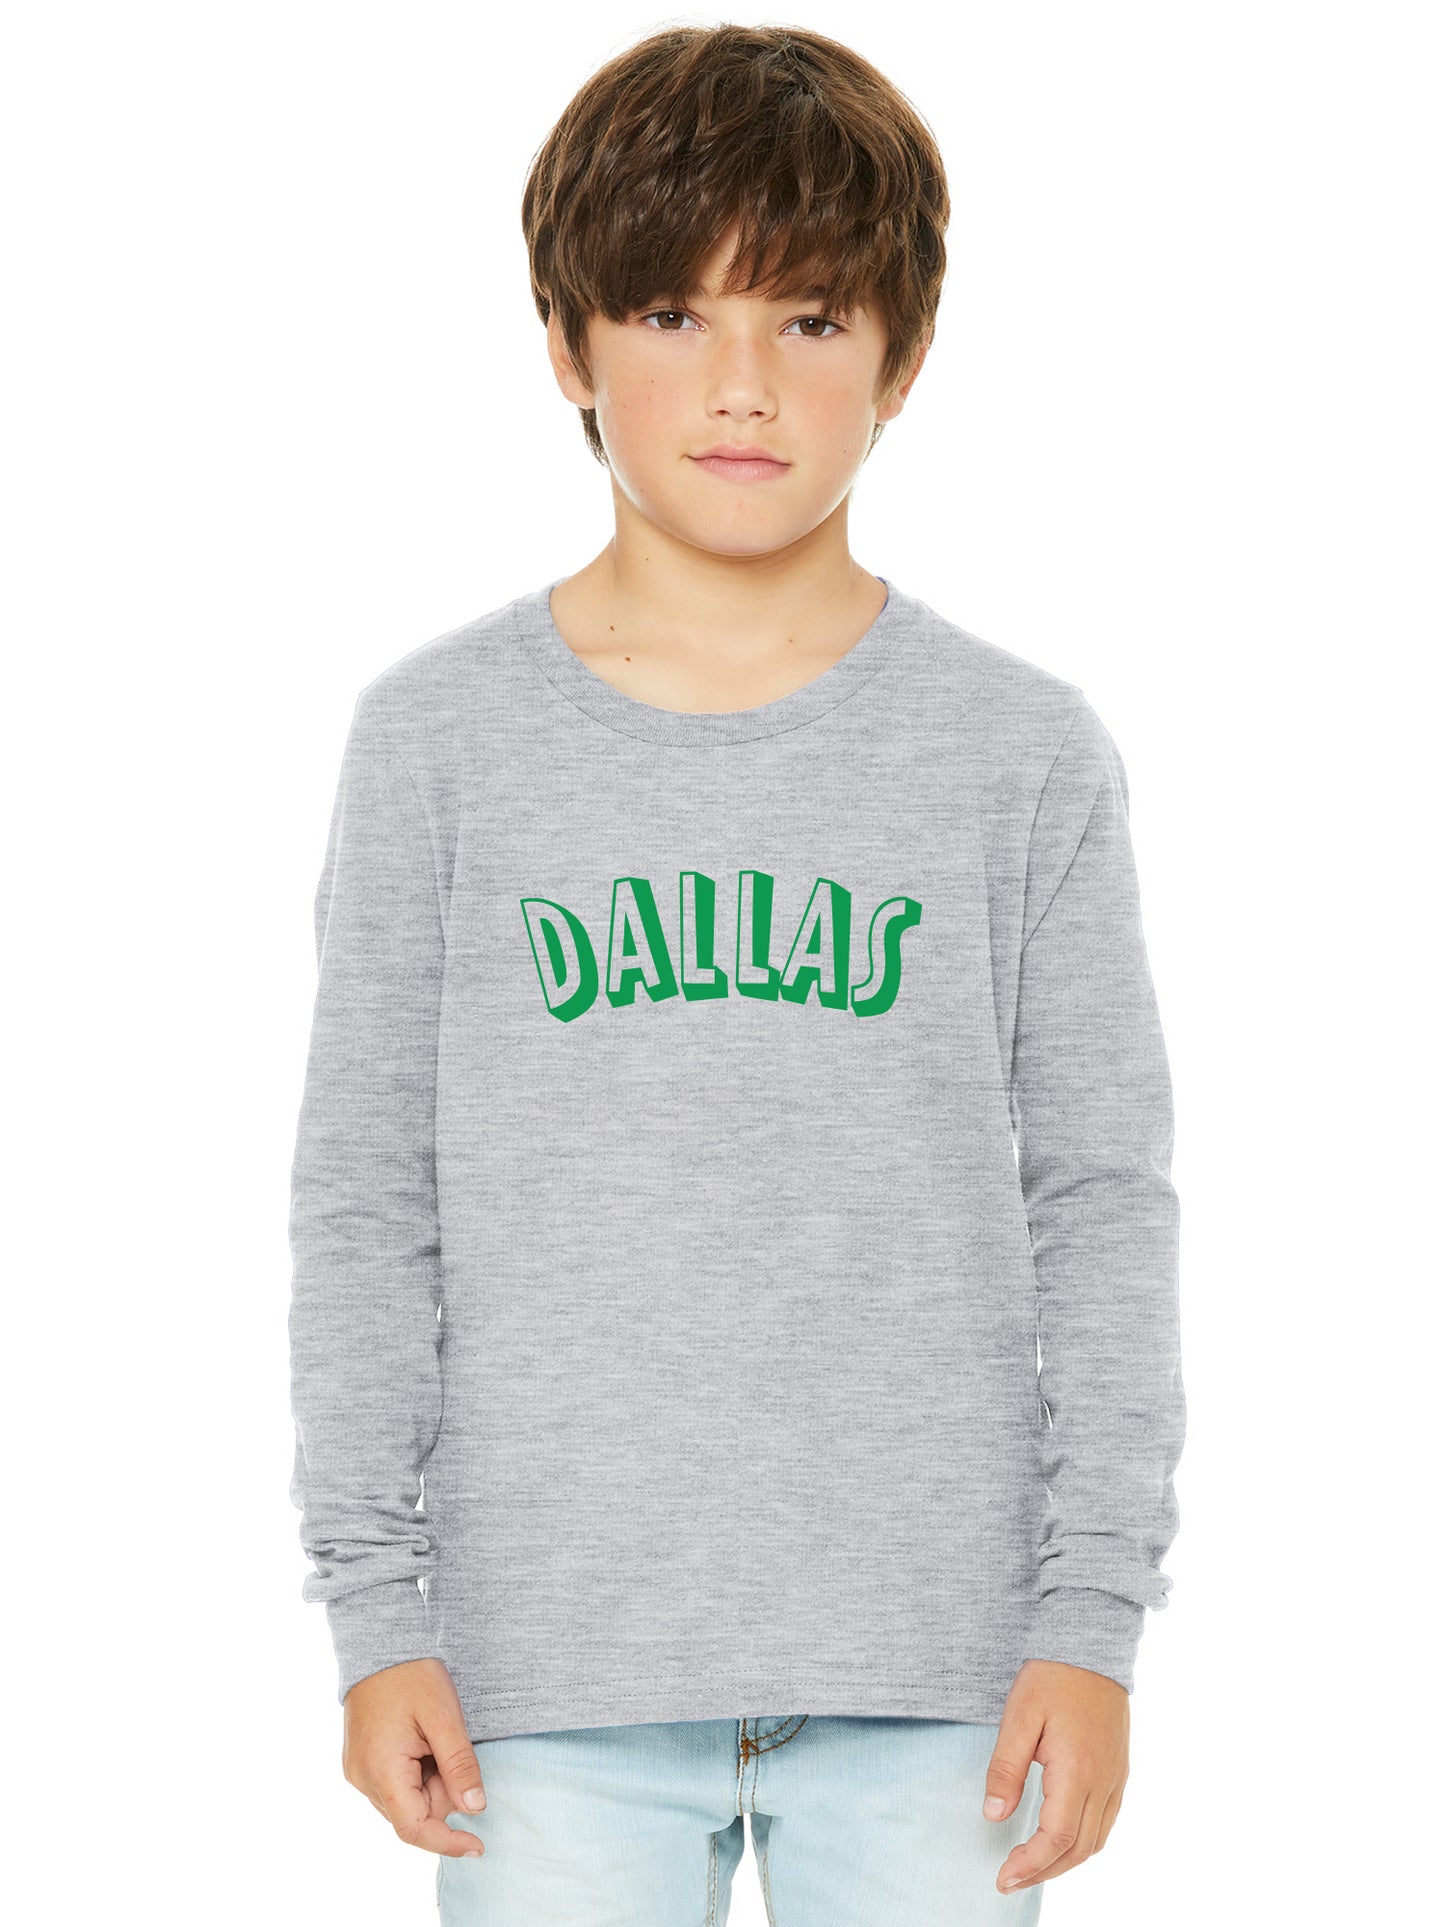 Daxton Youth Long Sleeve Dallas Basic Tshirt